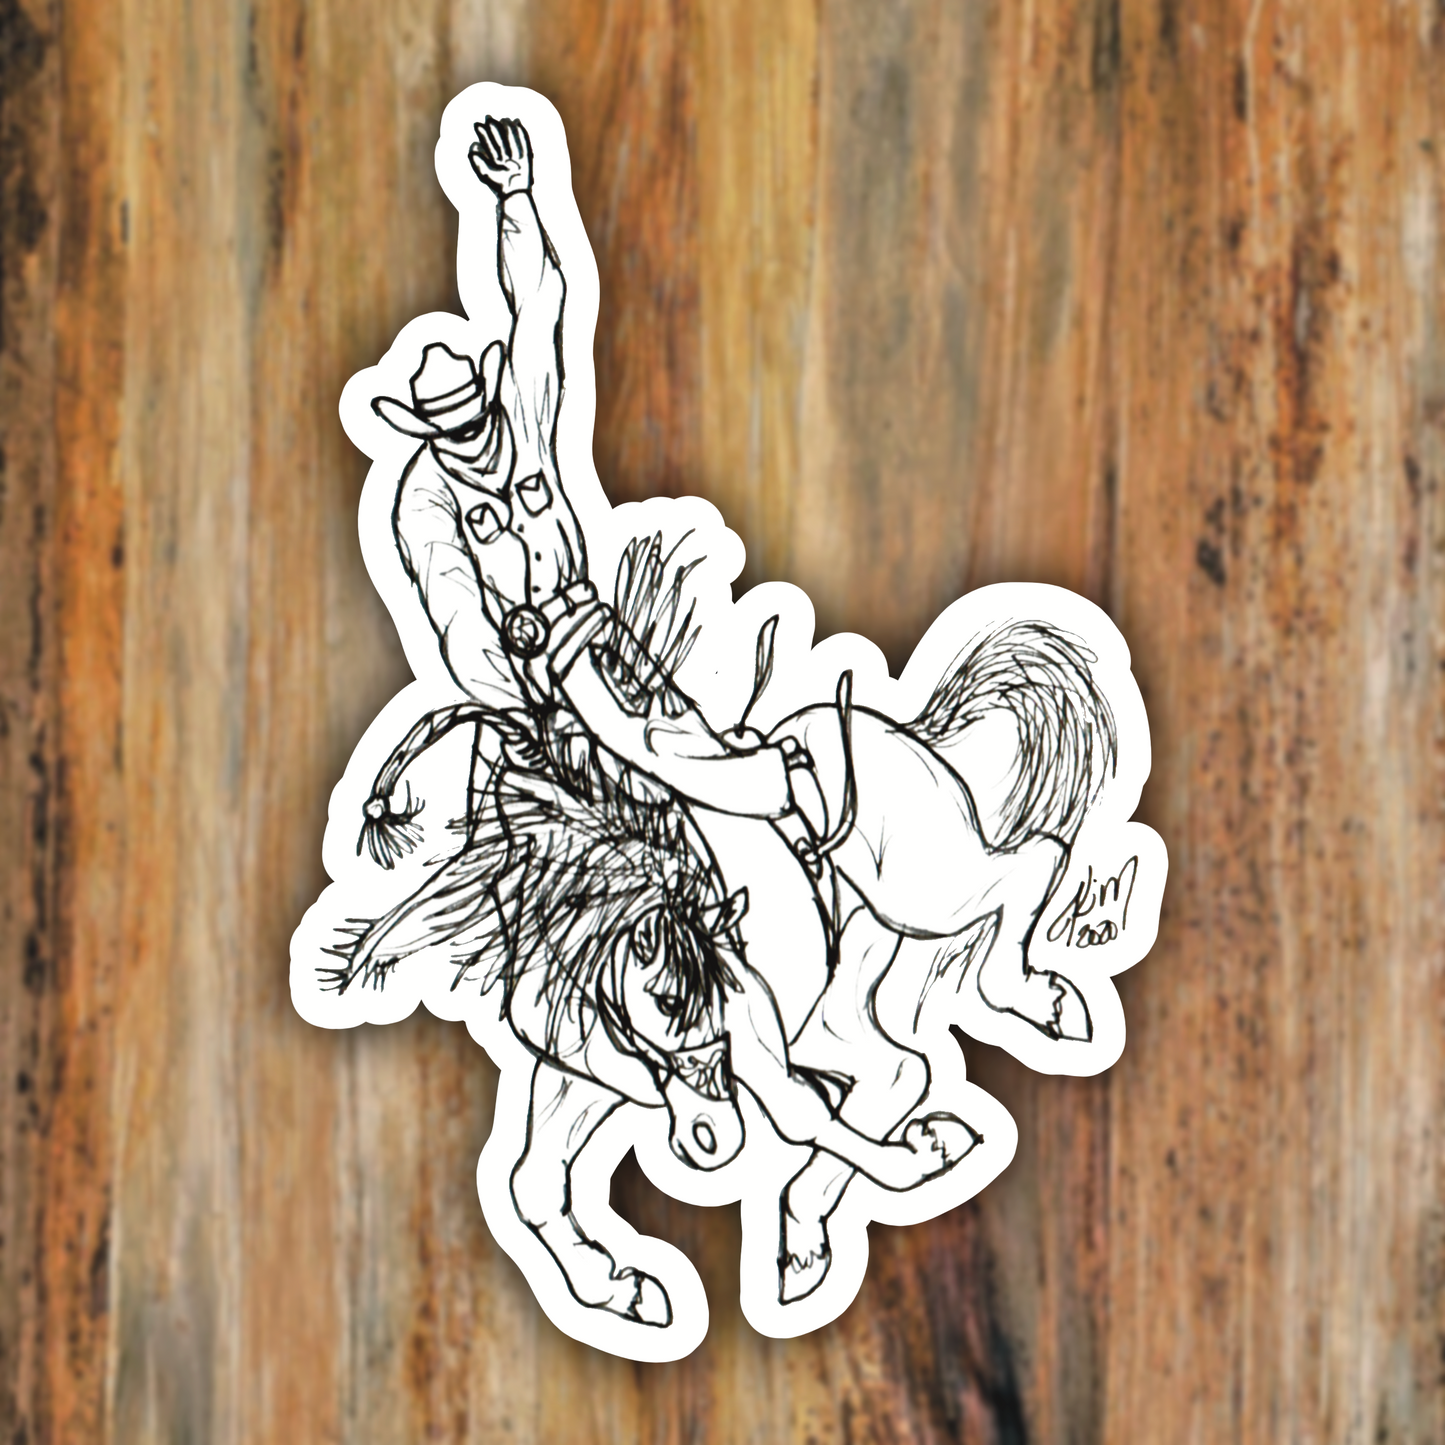 Bucking Bronc Rider Horse Vinyl Sticker